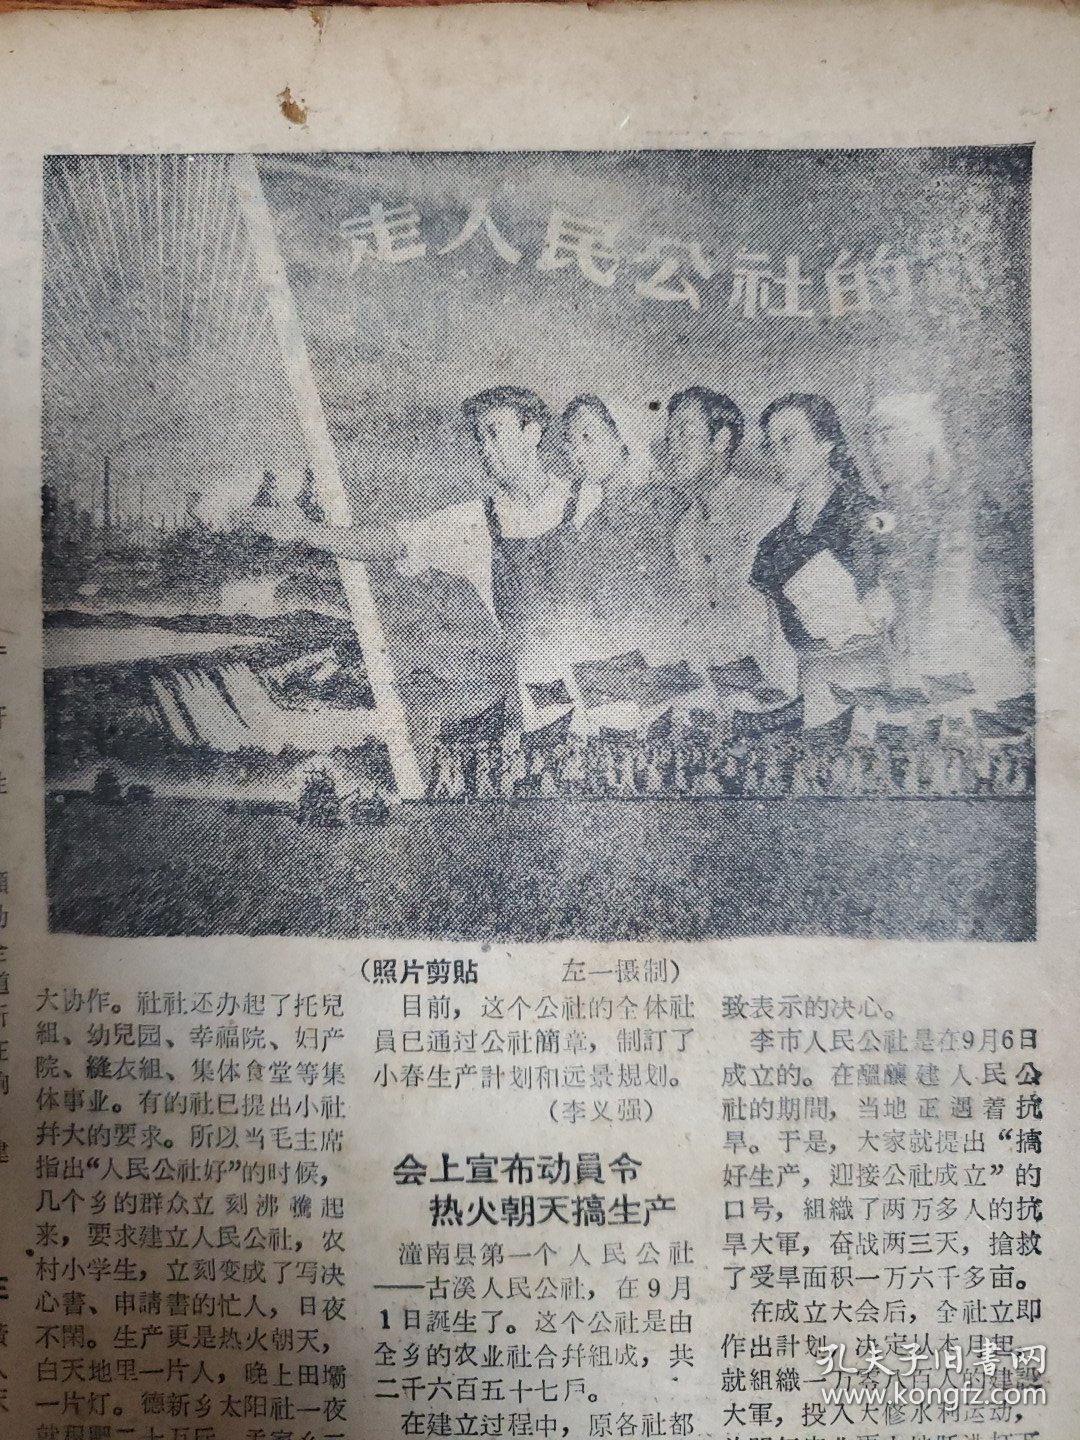 四川农民日报1958.9.16